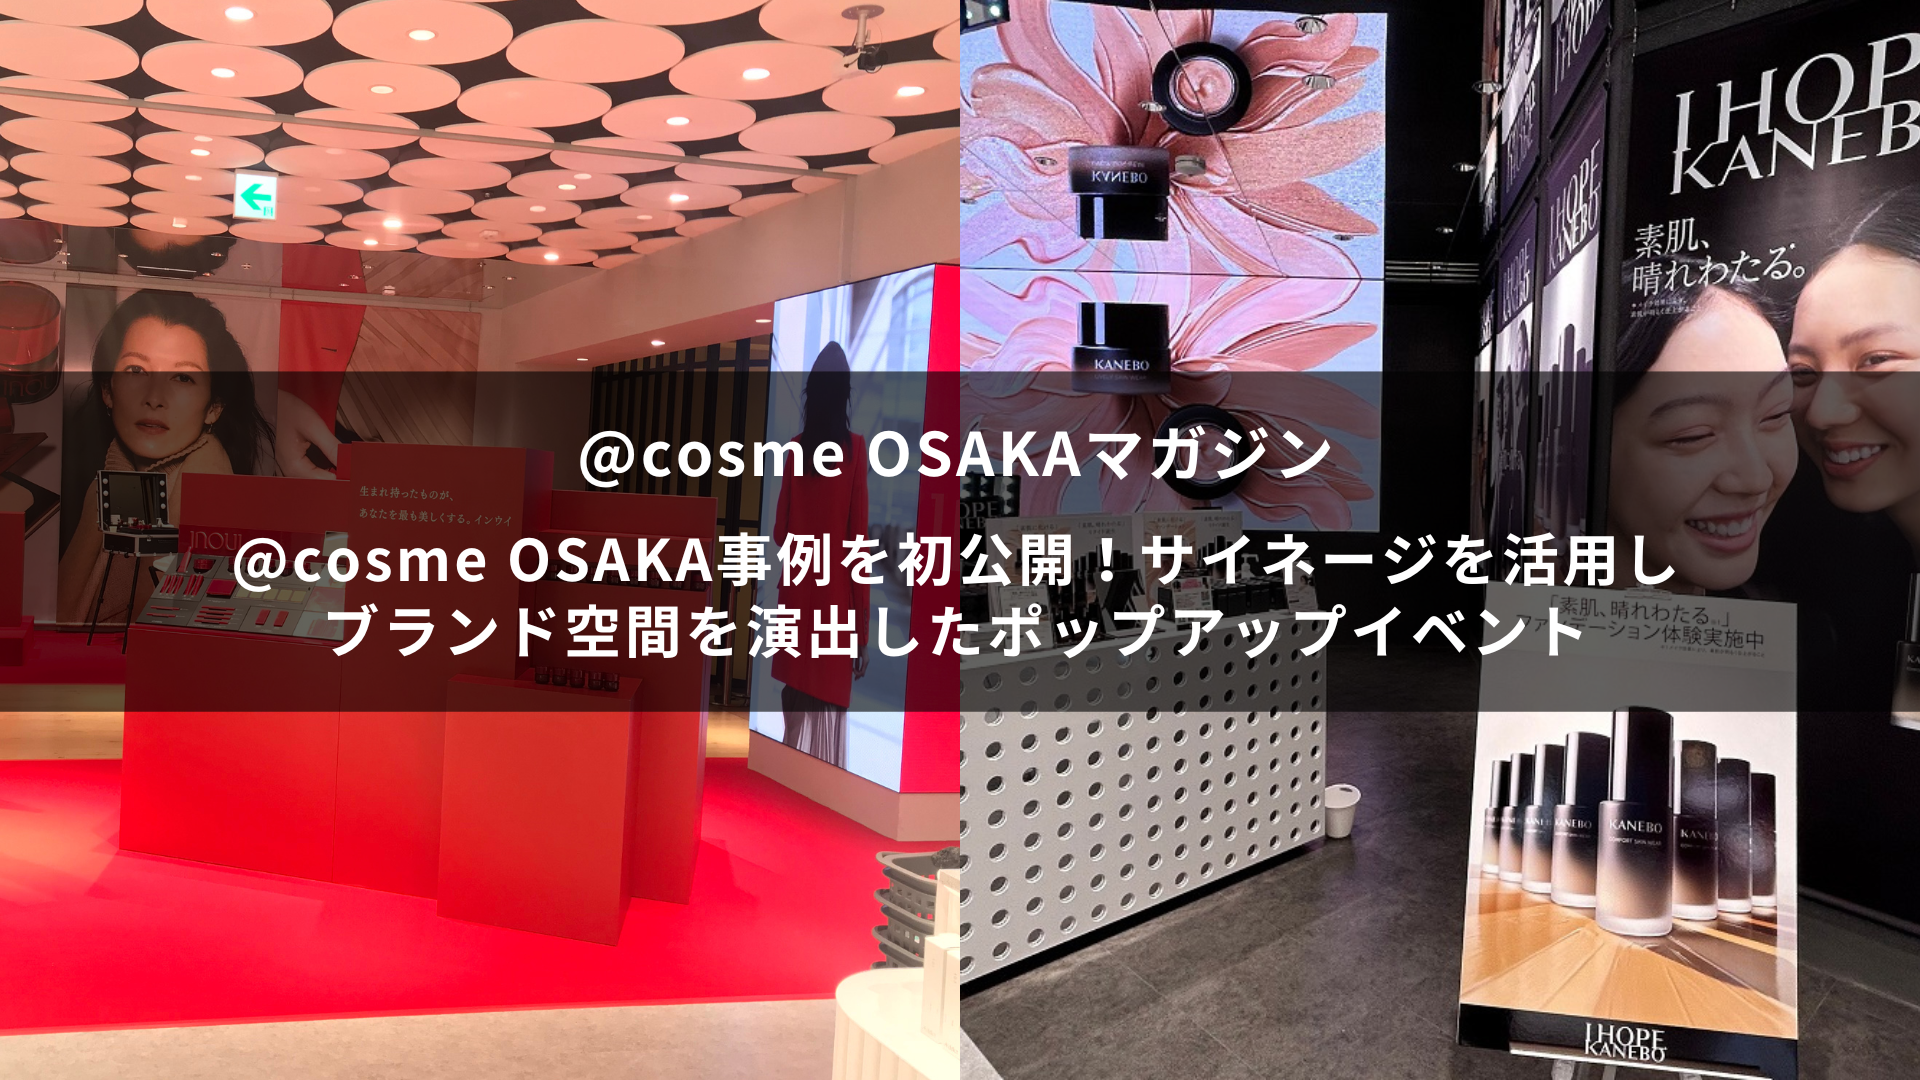 @cosme OSAKA事例を初公開！サイネージを活用しブランド空間を演出したポップアップイベント~@cosme OSAKAマガジン~ サムネイル画像